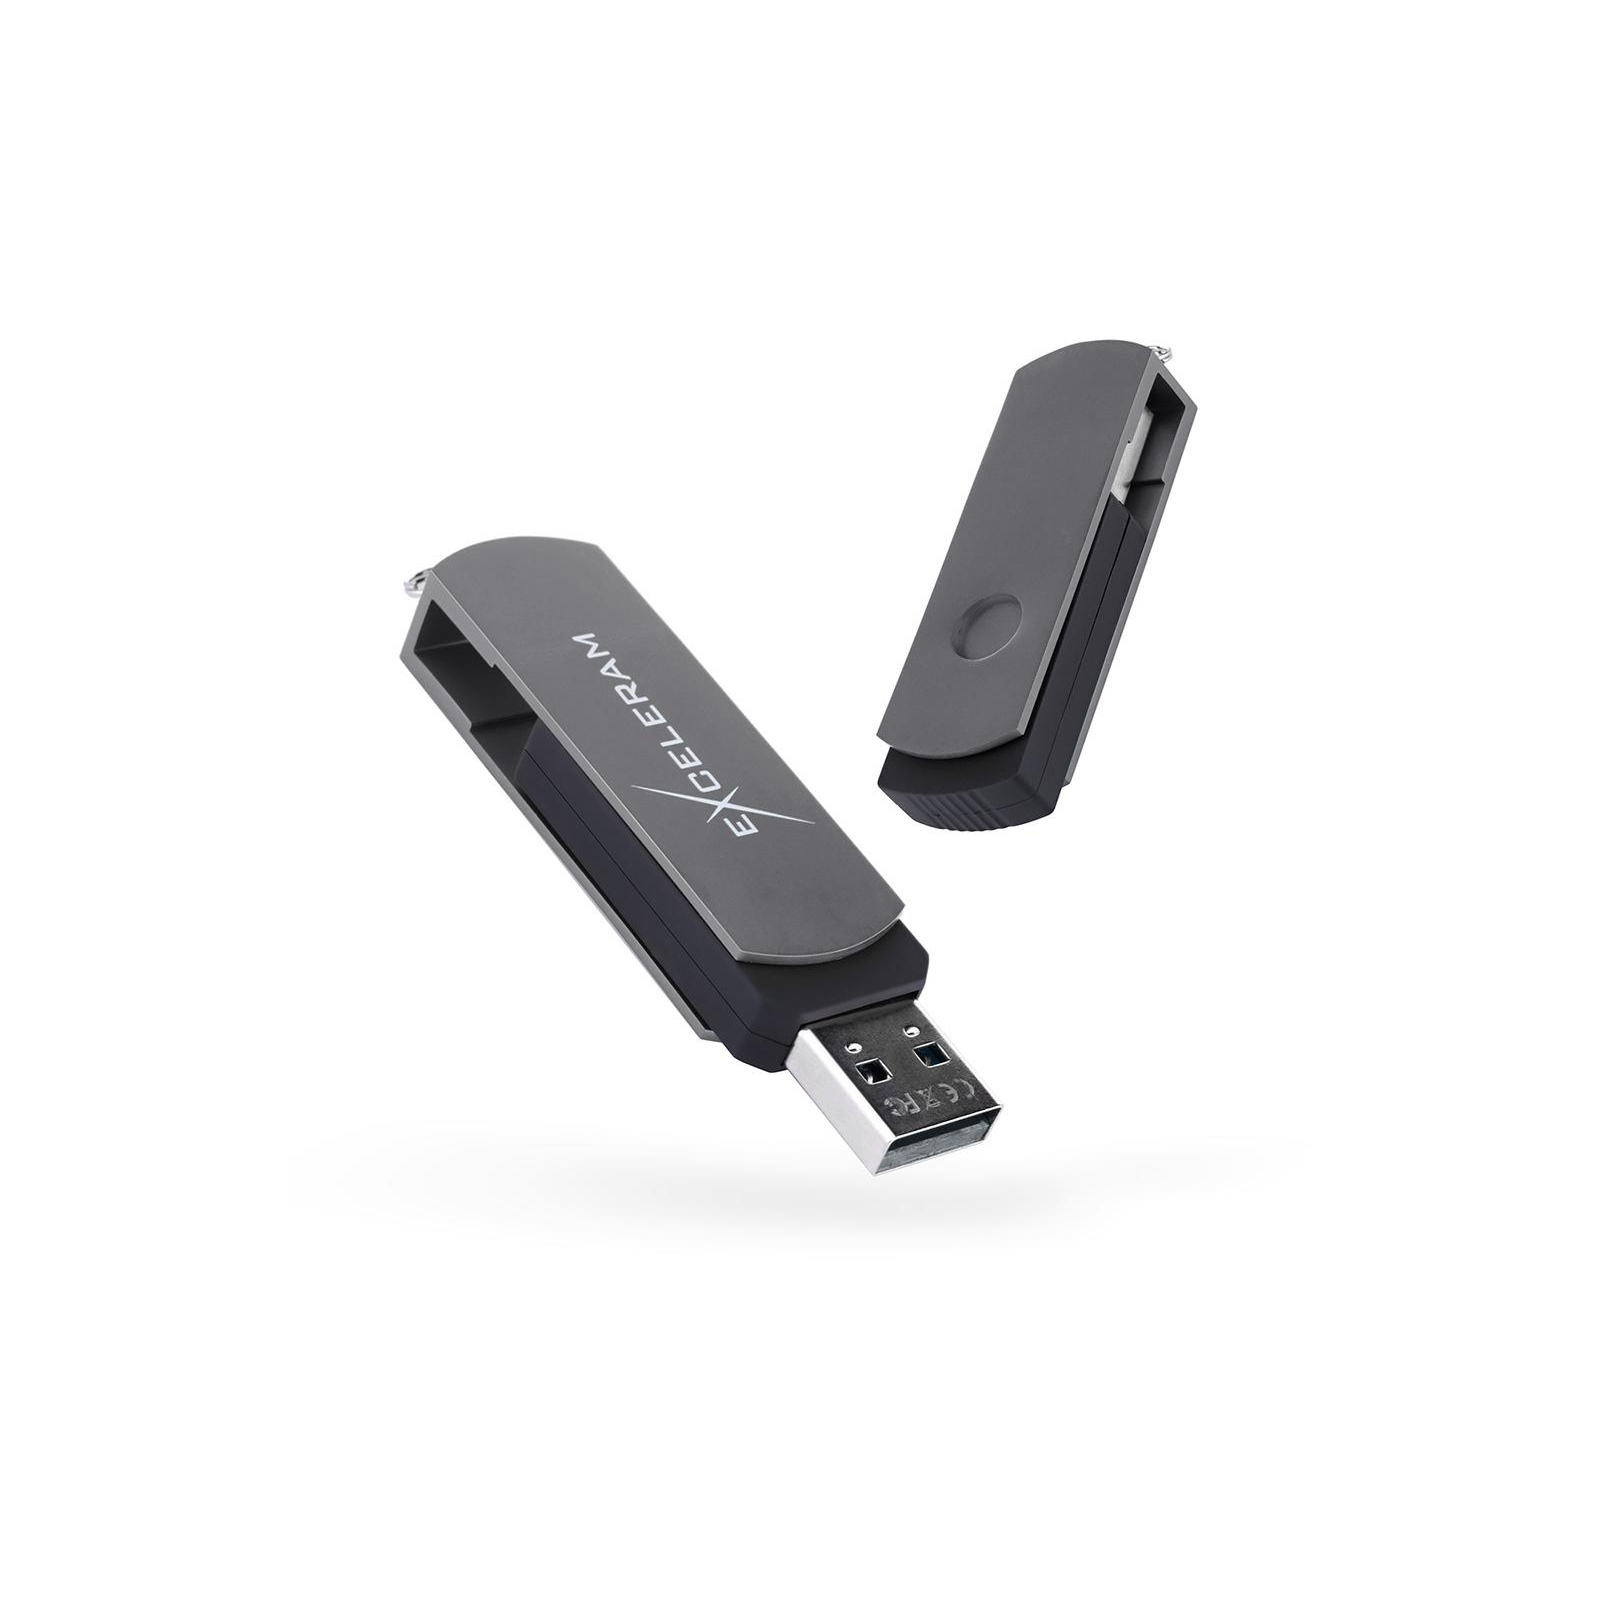 USB флеш накопичувач eXceleram 16GB P2 Series Gray/Black USB 2.0 (EXP2U2GB16)